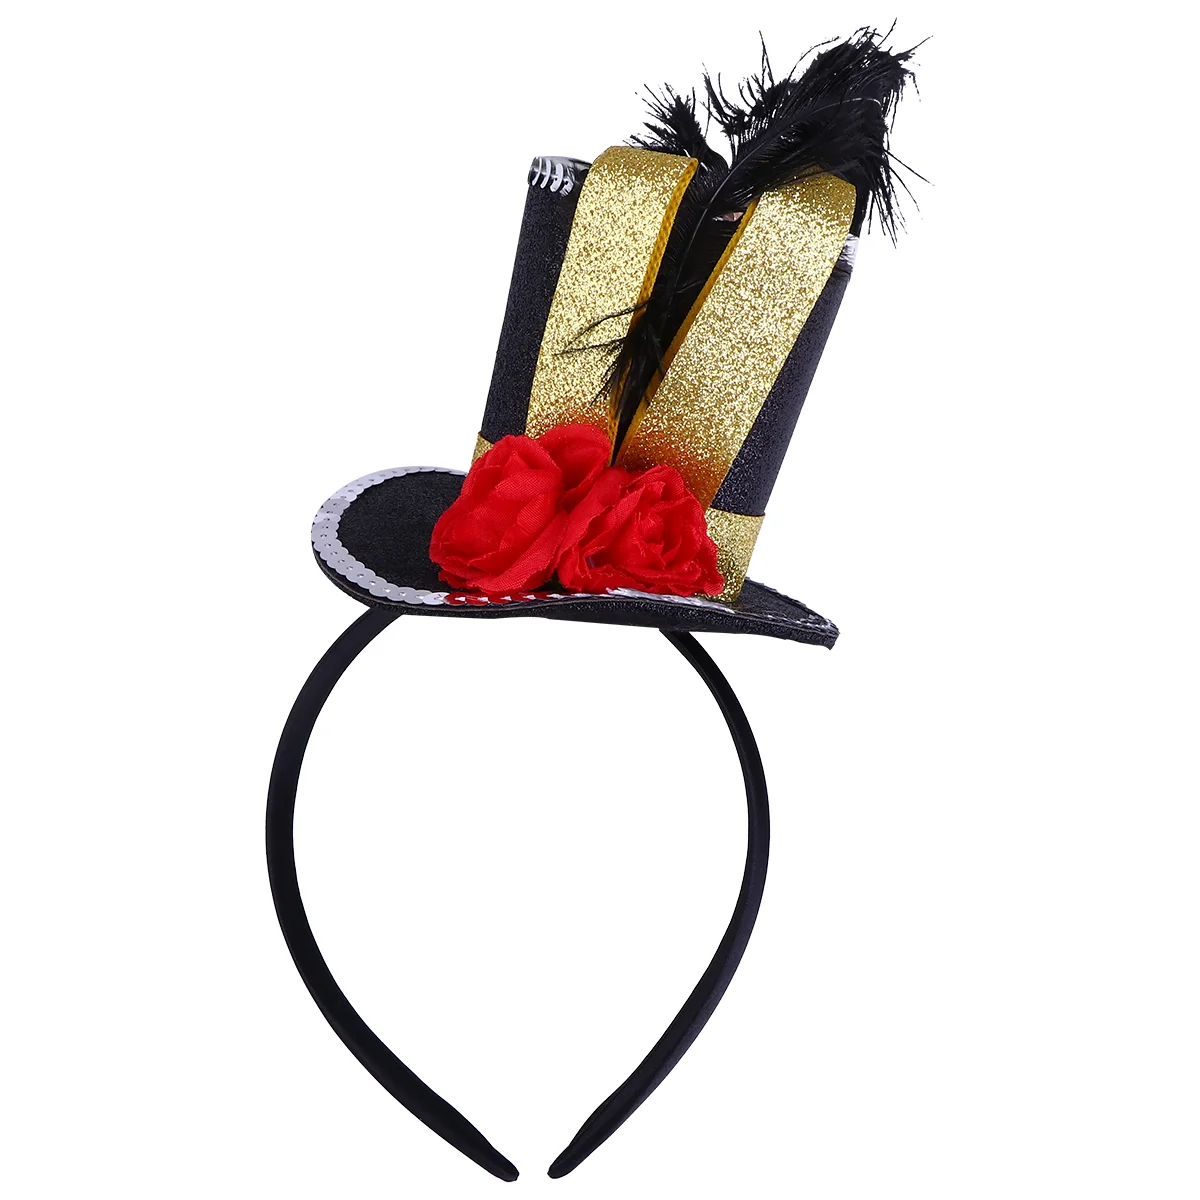 

Головной убор головная повязка аксессуары для волос Одежда для Хэллоуина обруч для представлений головной убор костюмы Дети фестиваль Рождество